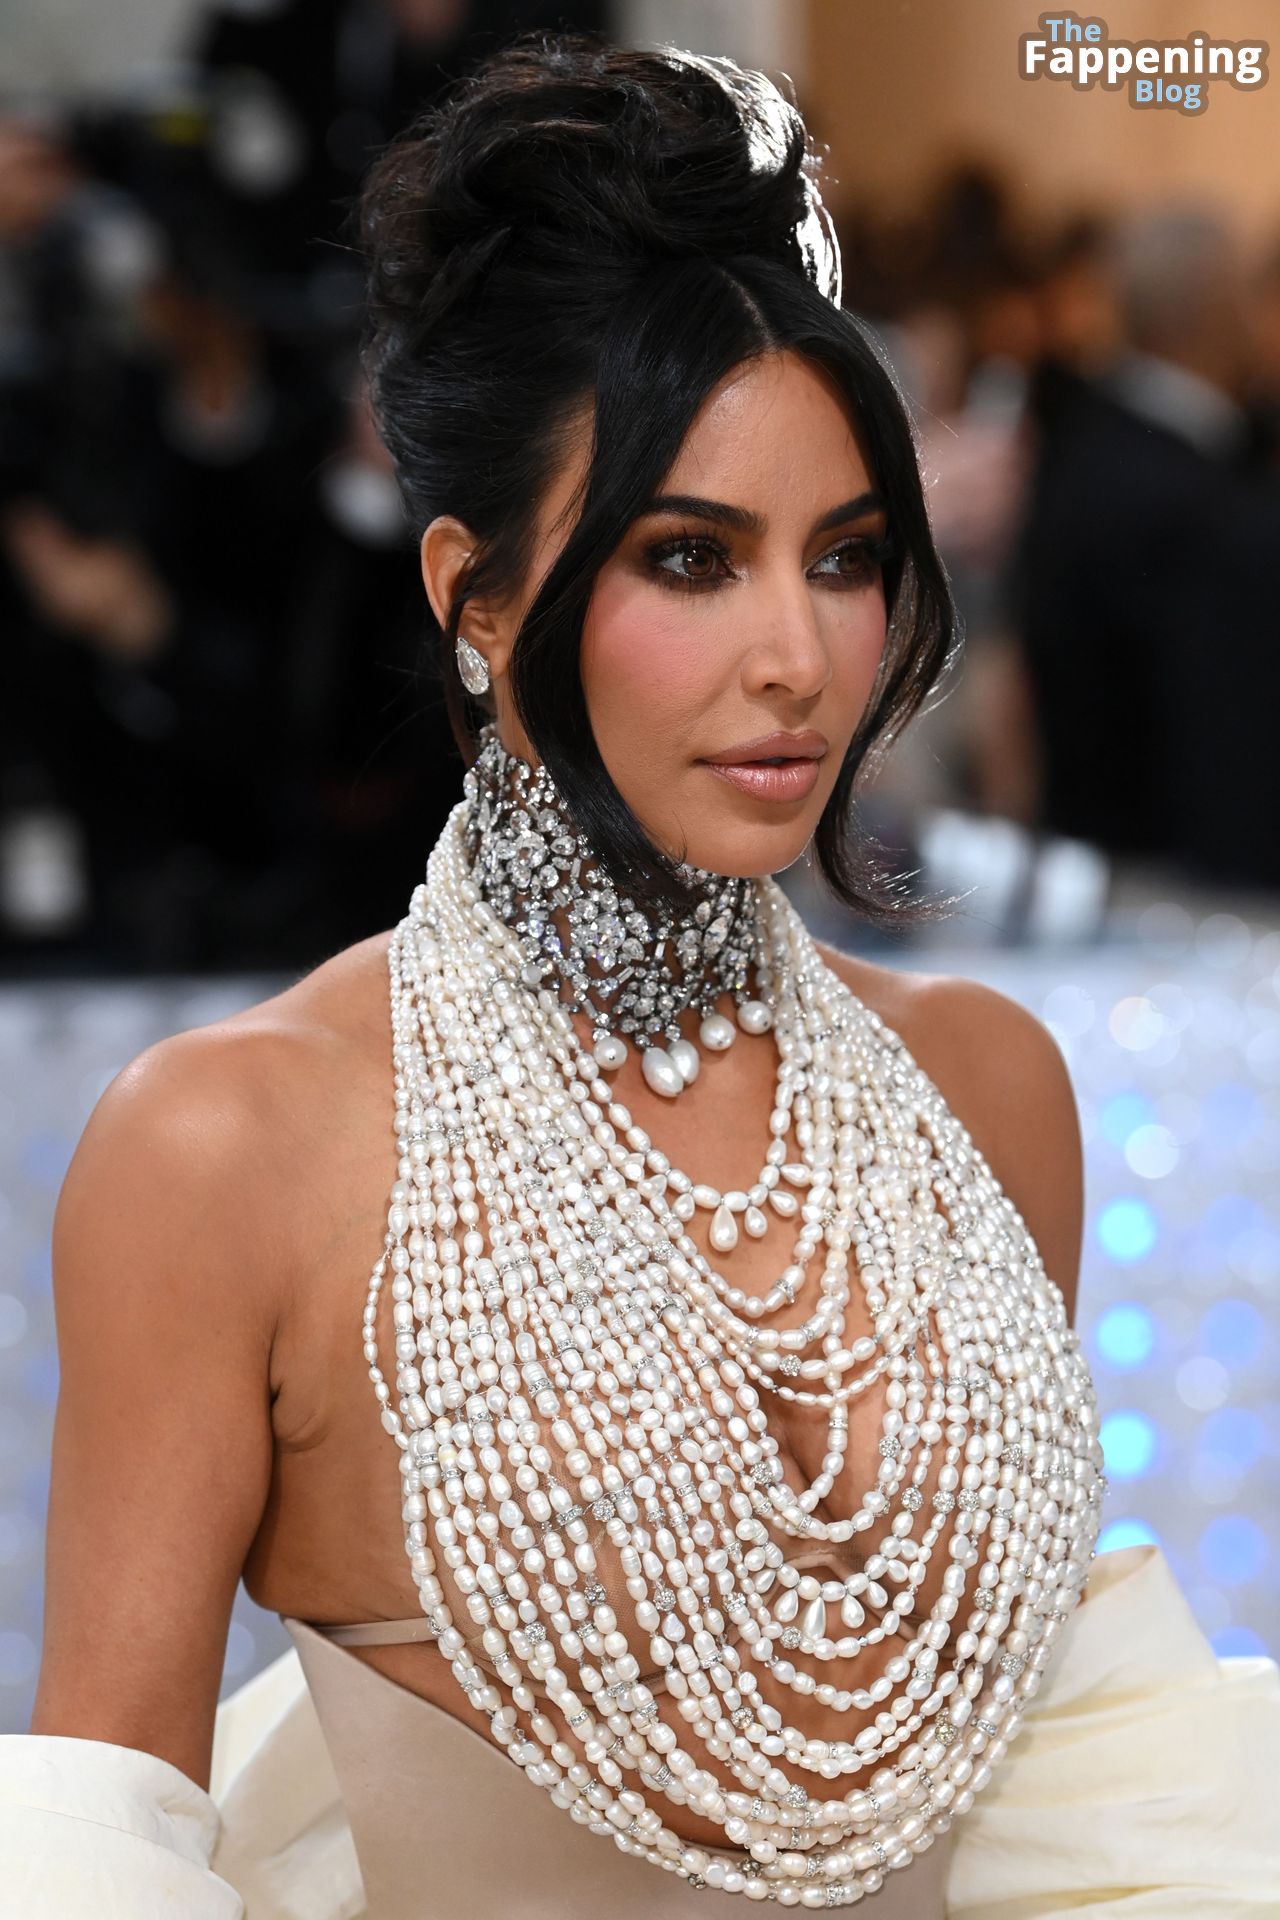 Kim-Kardashian-Sexy-The-Fappening-Blog-38.jpg